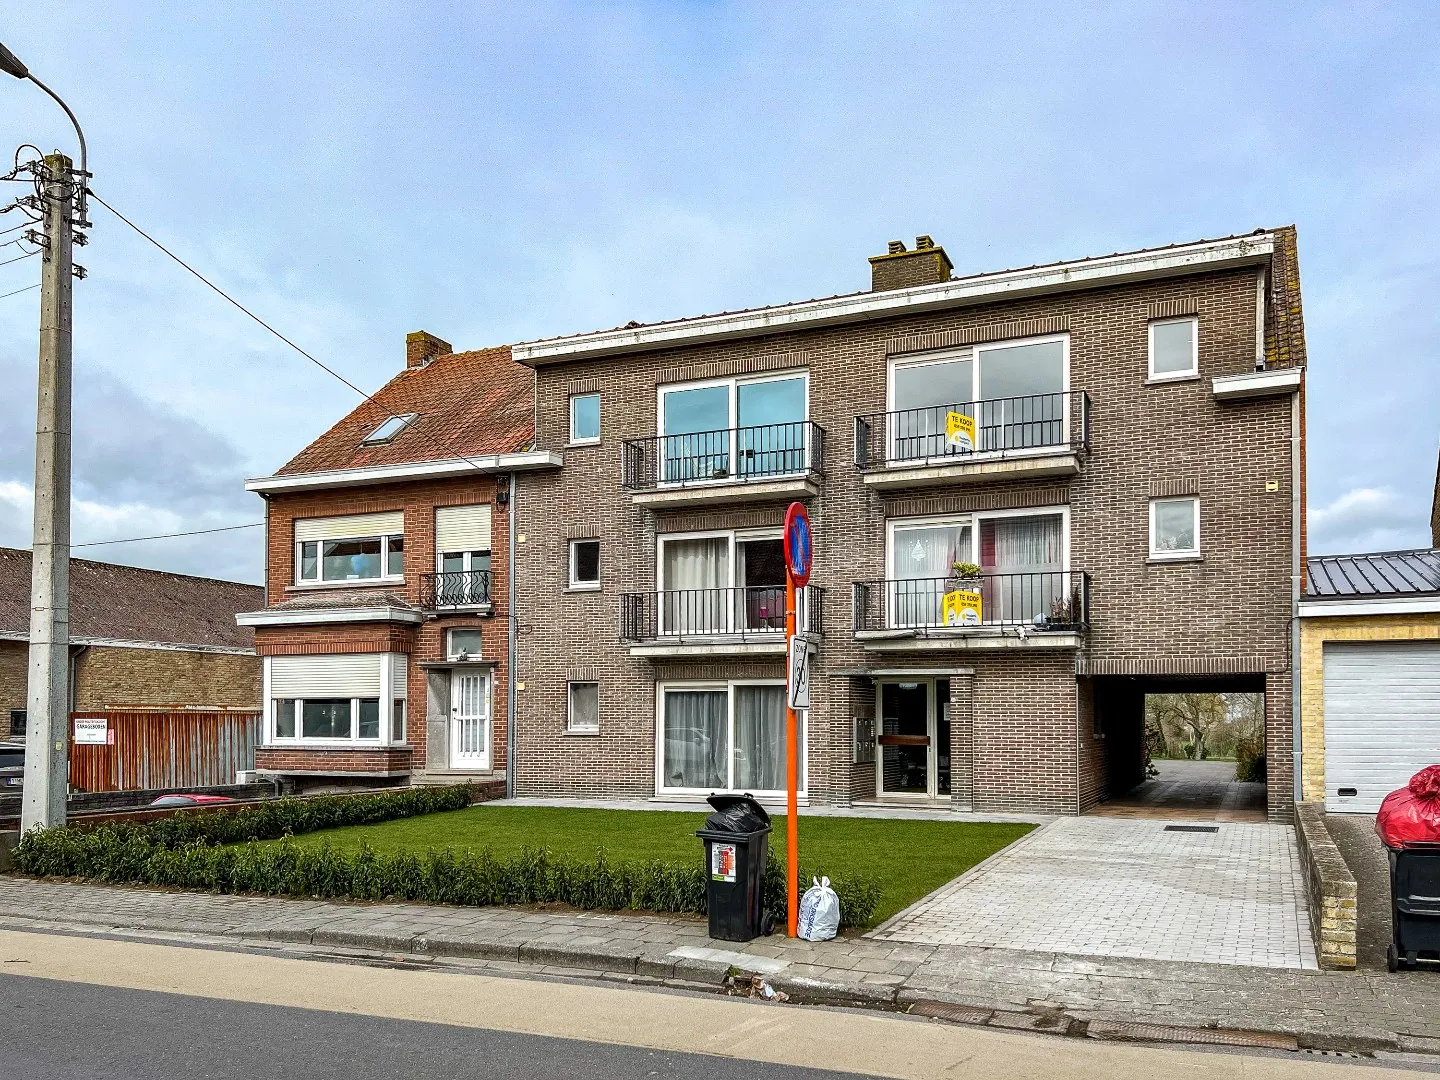 Appartement (72m² + 5m² terras)  en gemeenschappelijke tuin in centrum Diksmuide! 